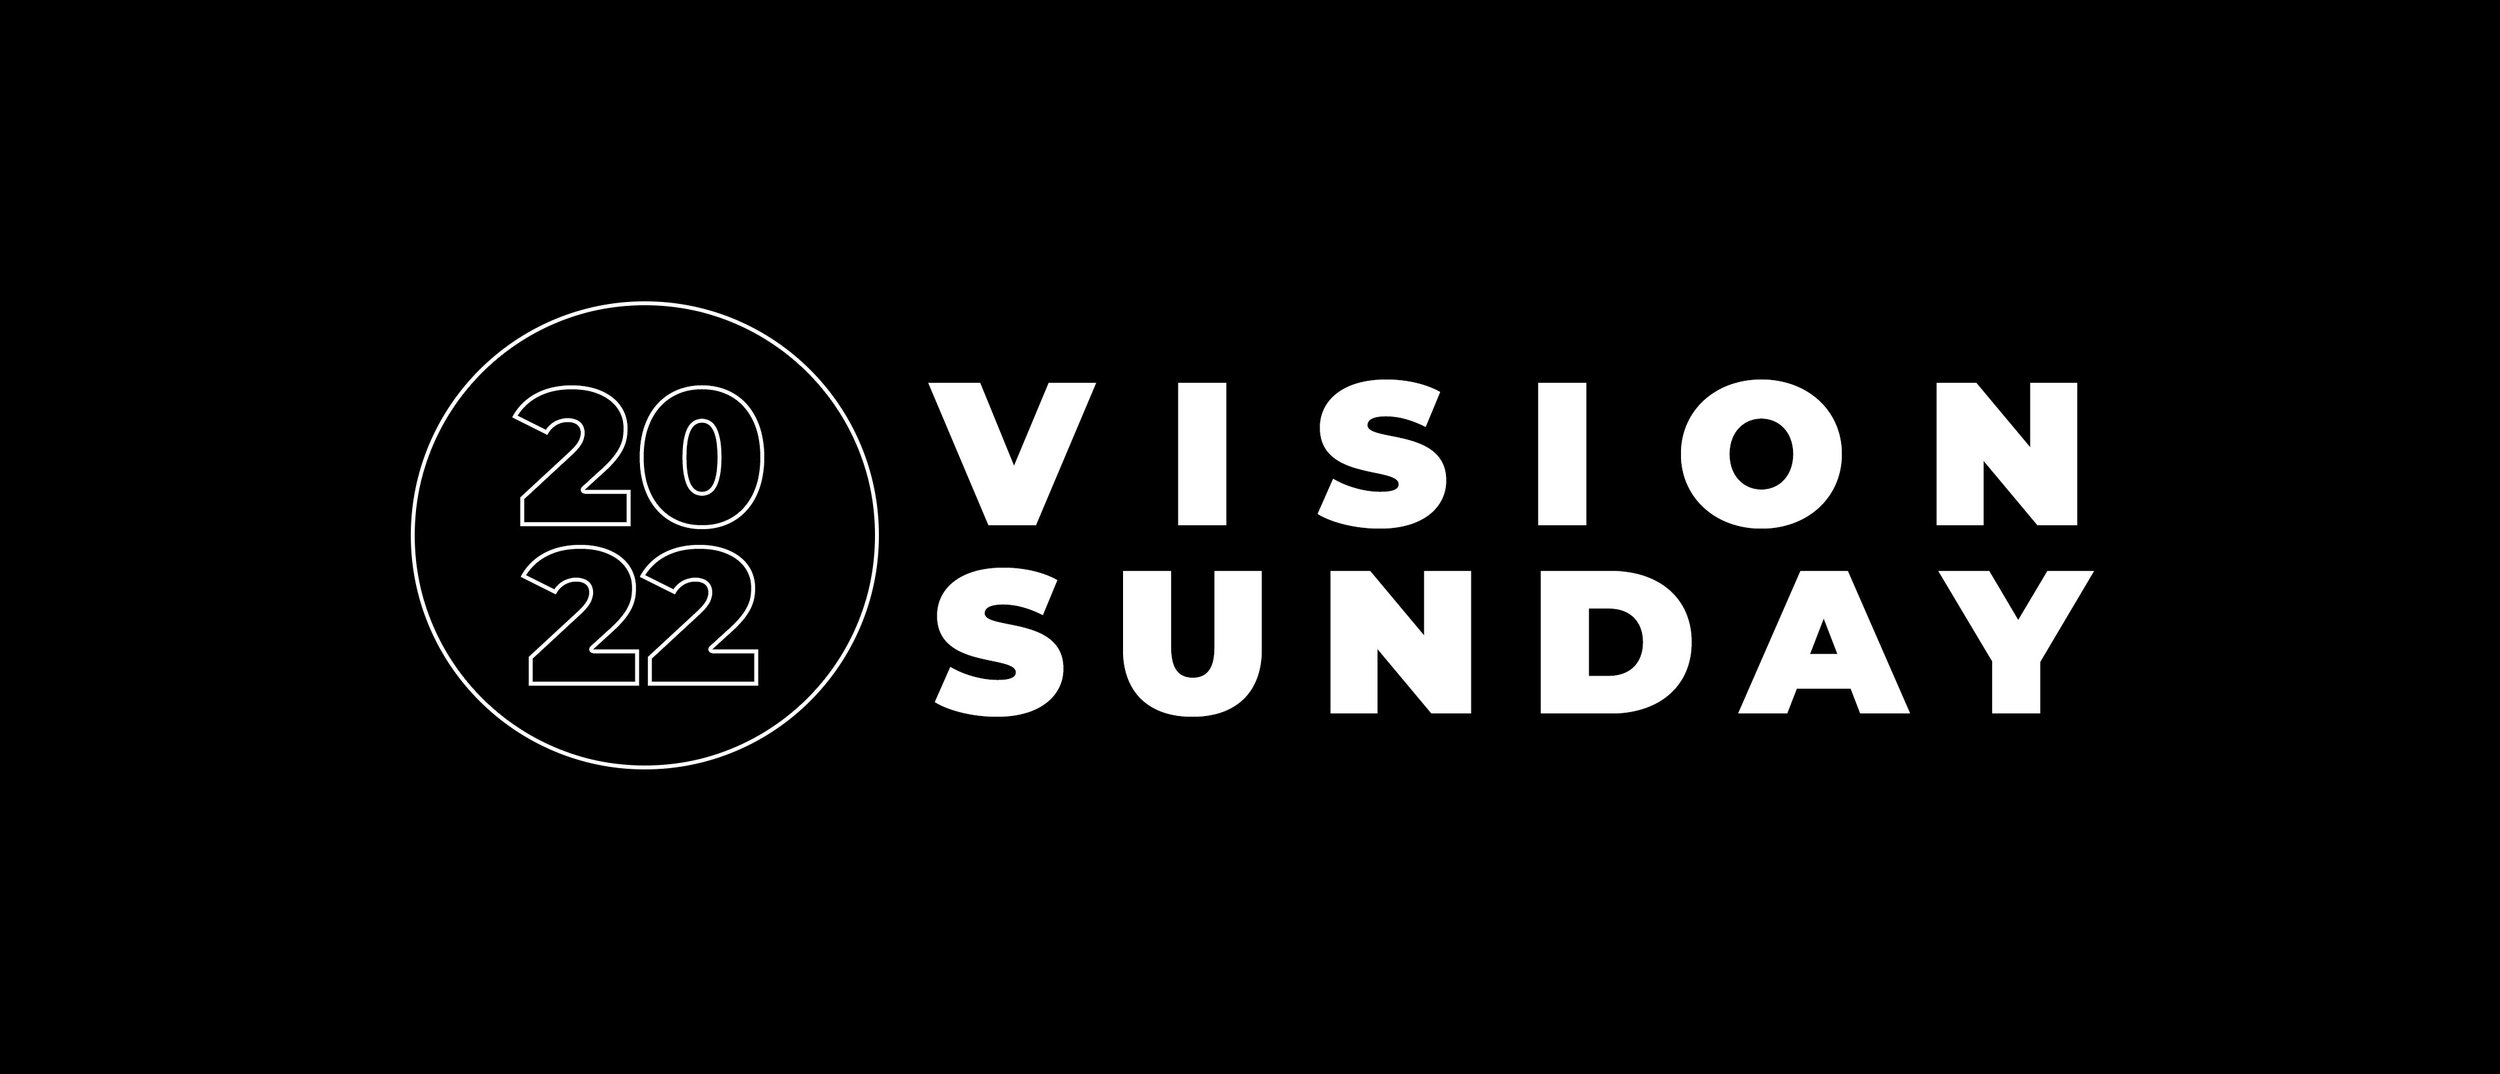 Vision Sunday.jpg